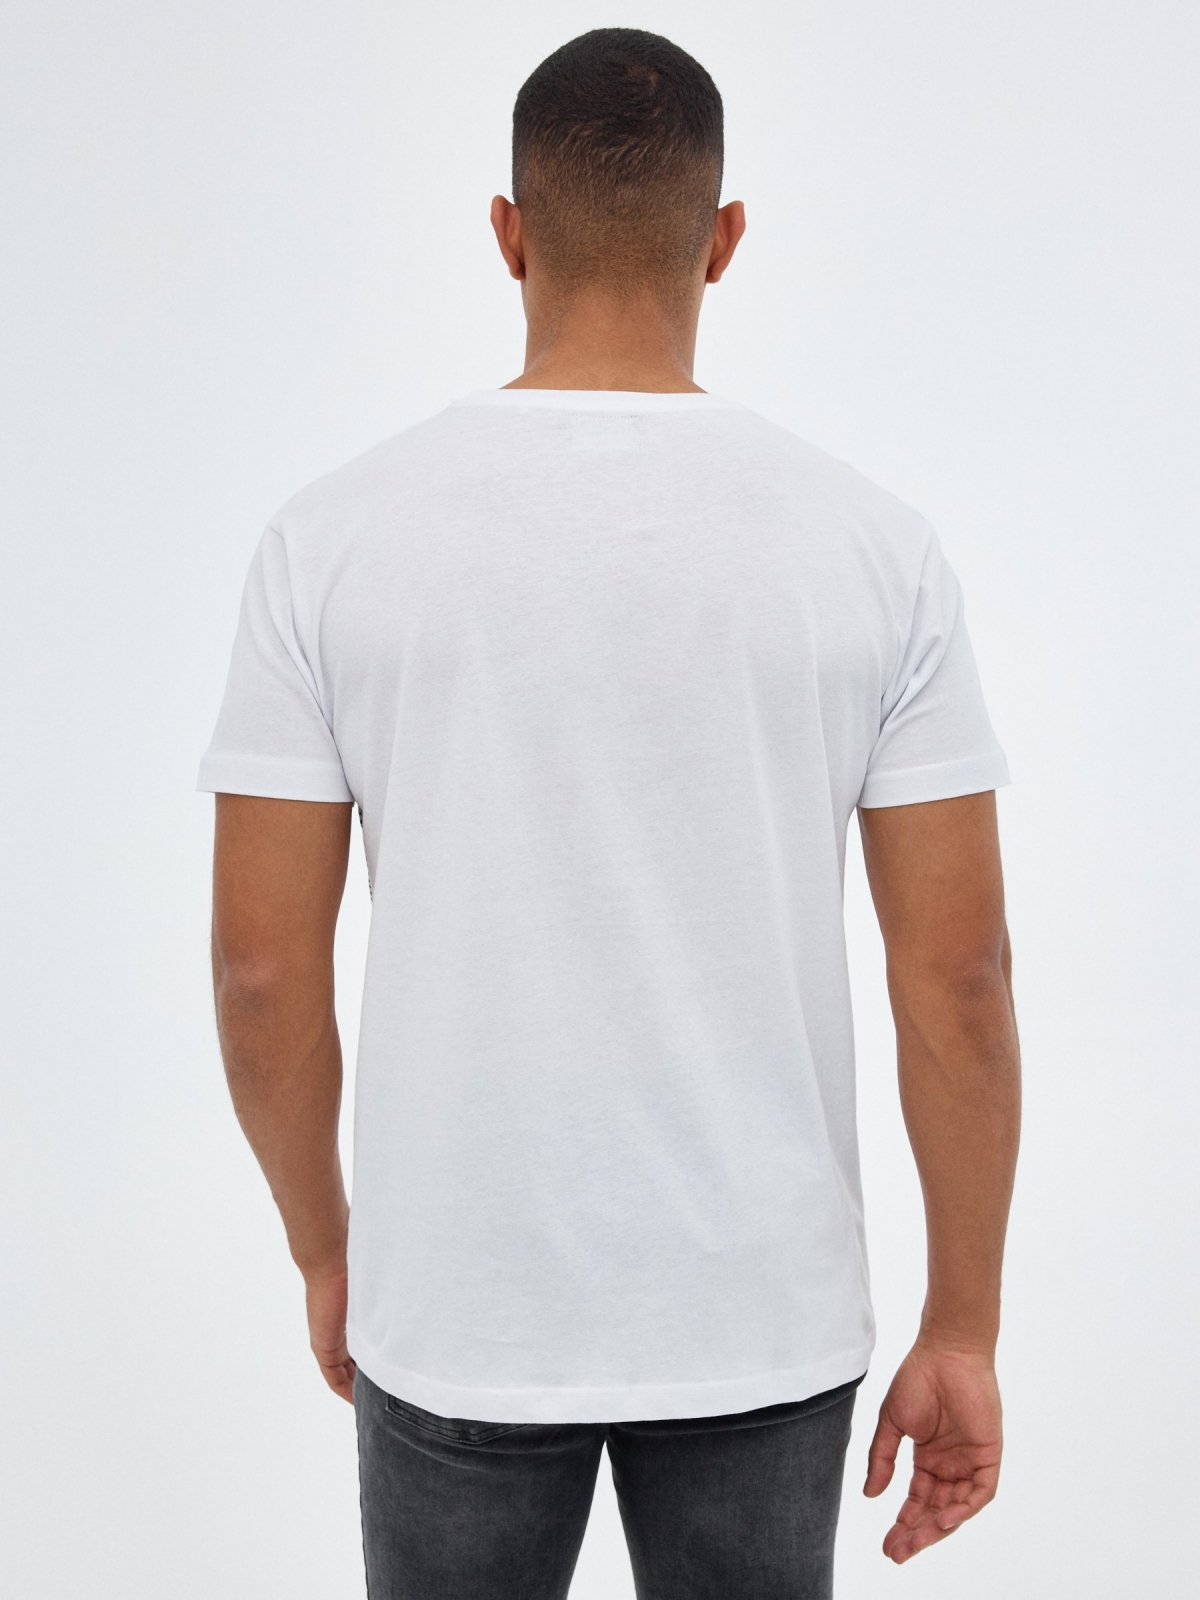 T-shirt branca do crânio branco vista meia traseira